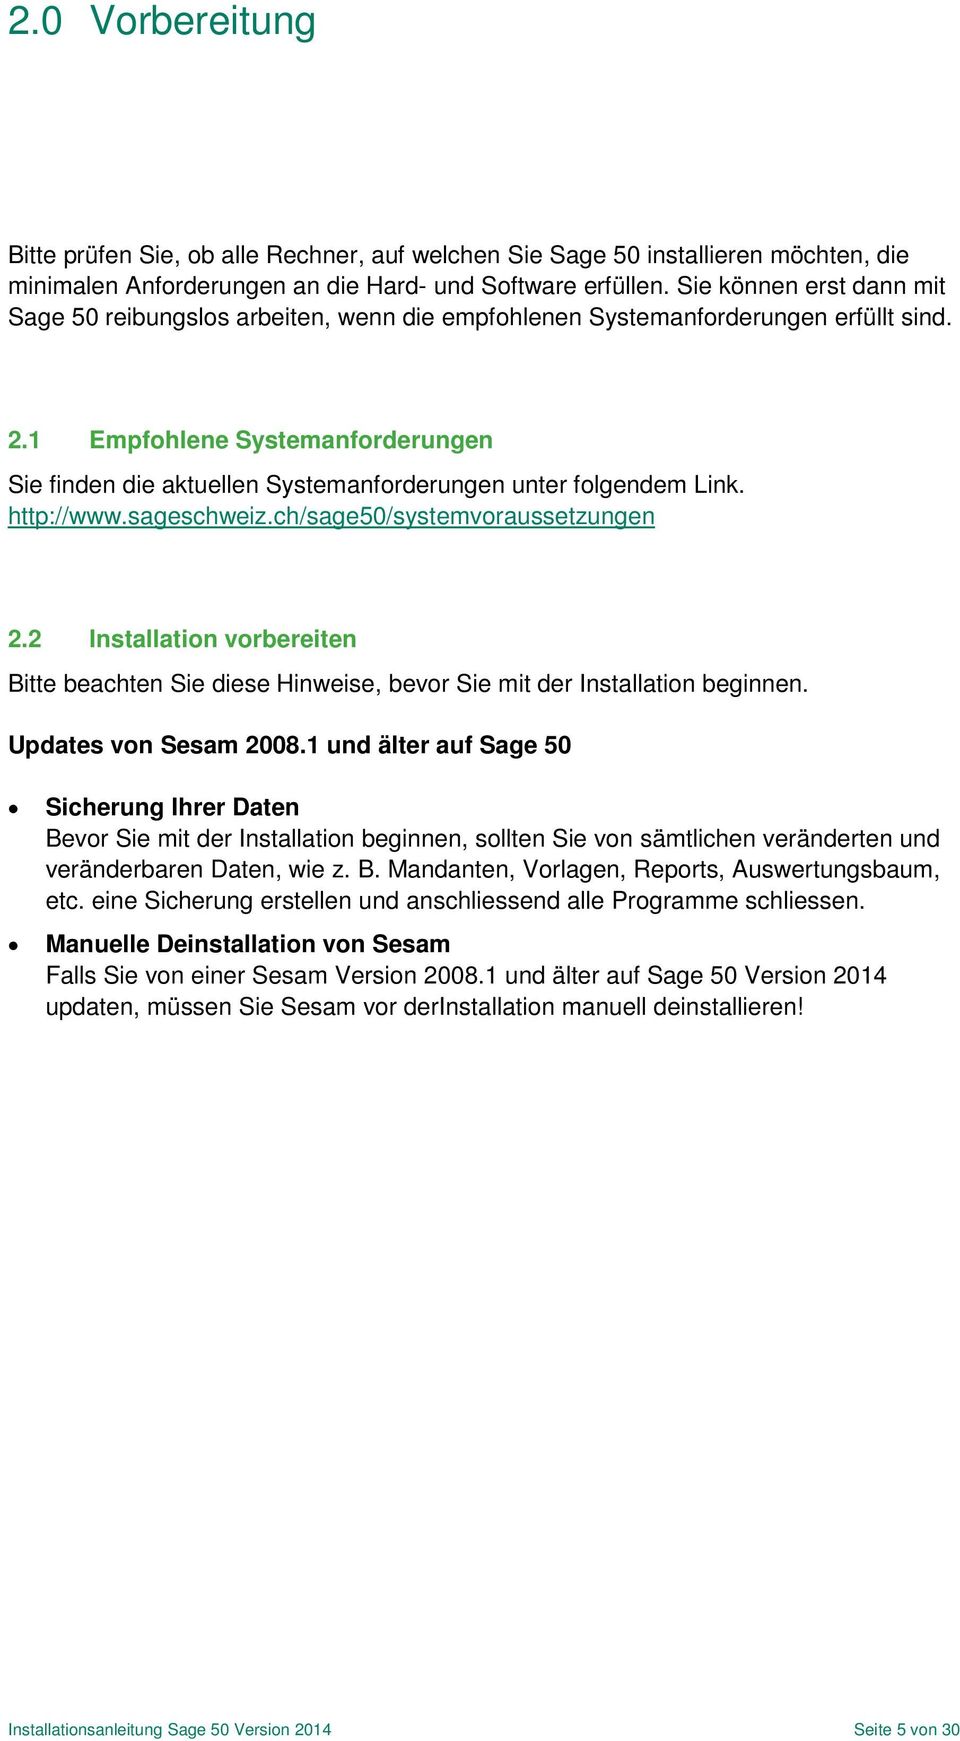 1 Empfohlene Systemanforderungen Sie finden die aktuellen Systemanforderungen unter folgendem Link. http://www.sageschweiz.ch/sage50/systemvoraussetzungen 2.